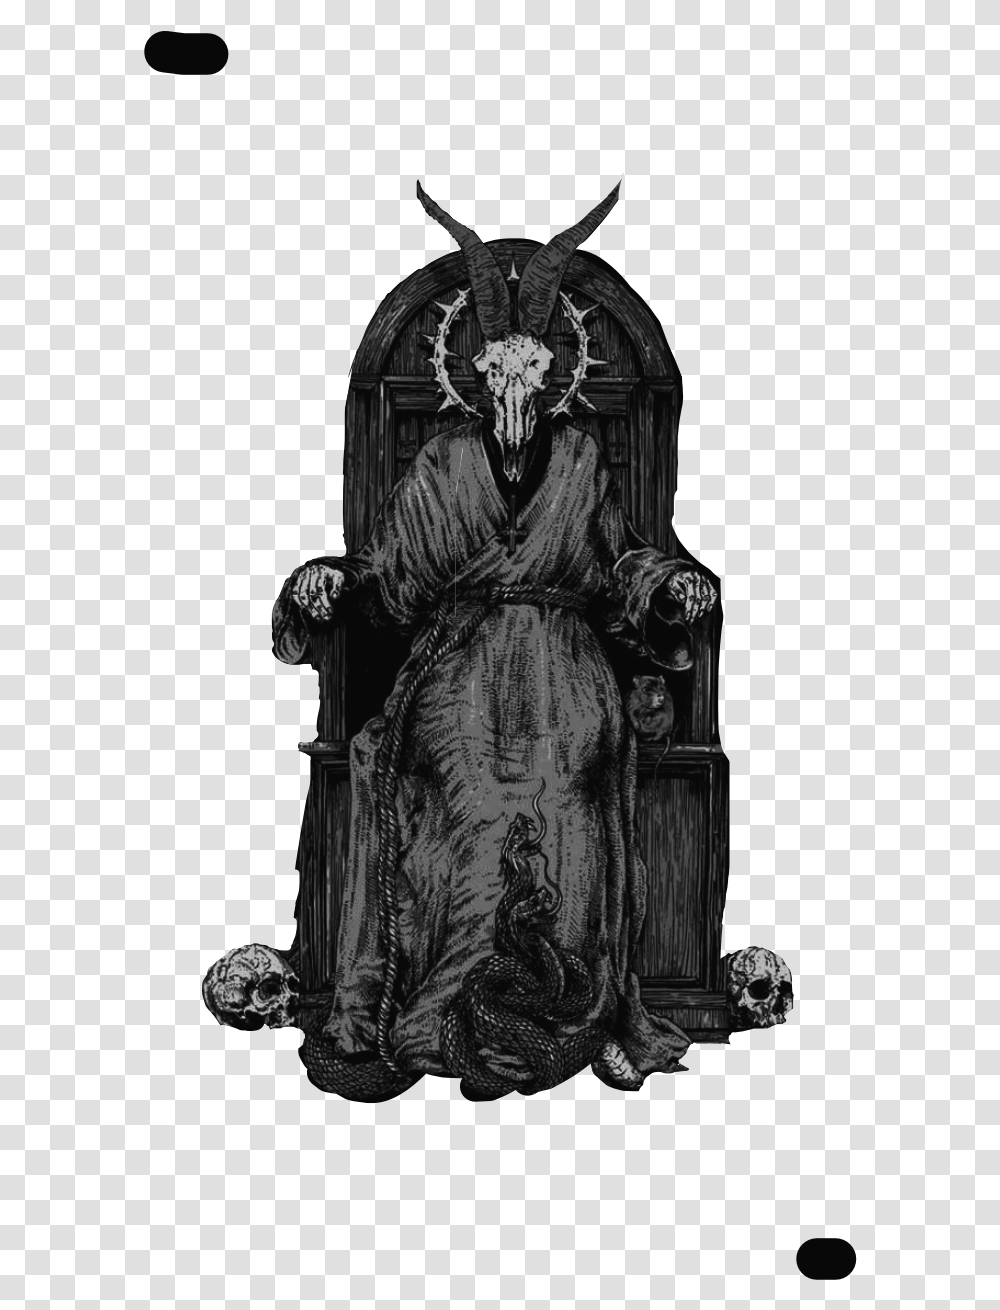 Baphomet Evil Hailsatan Art Religious Satan Devil Free Illustration, Statue, Sculpture, Person, Monument Transparent Png